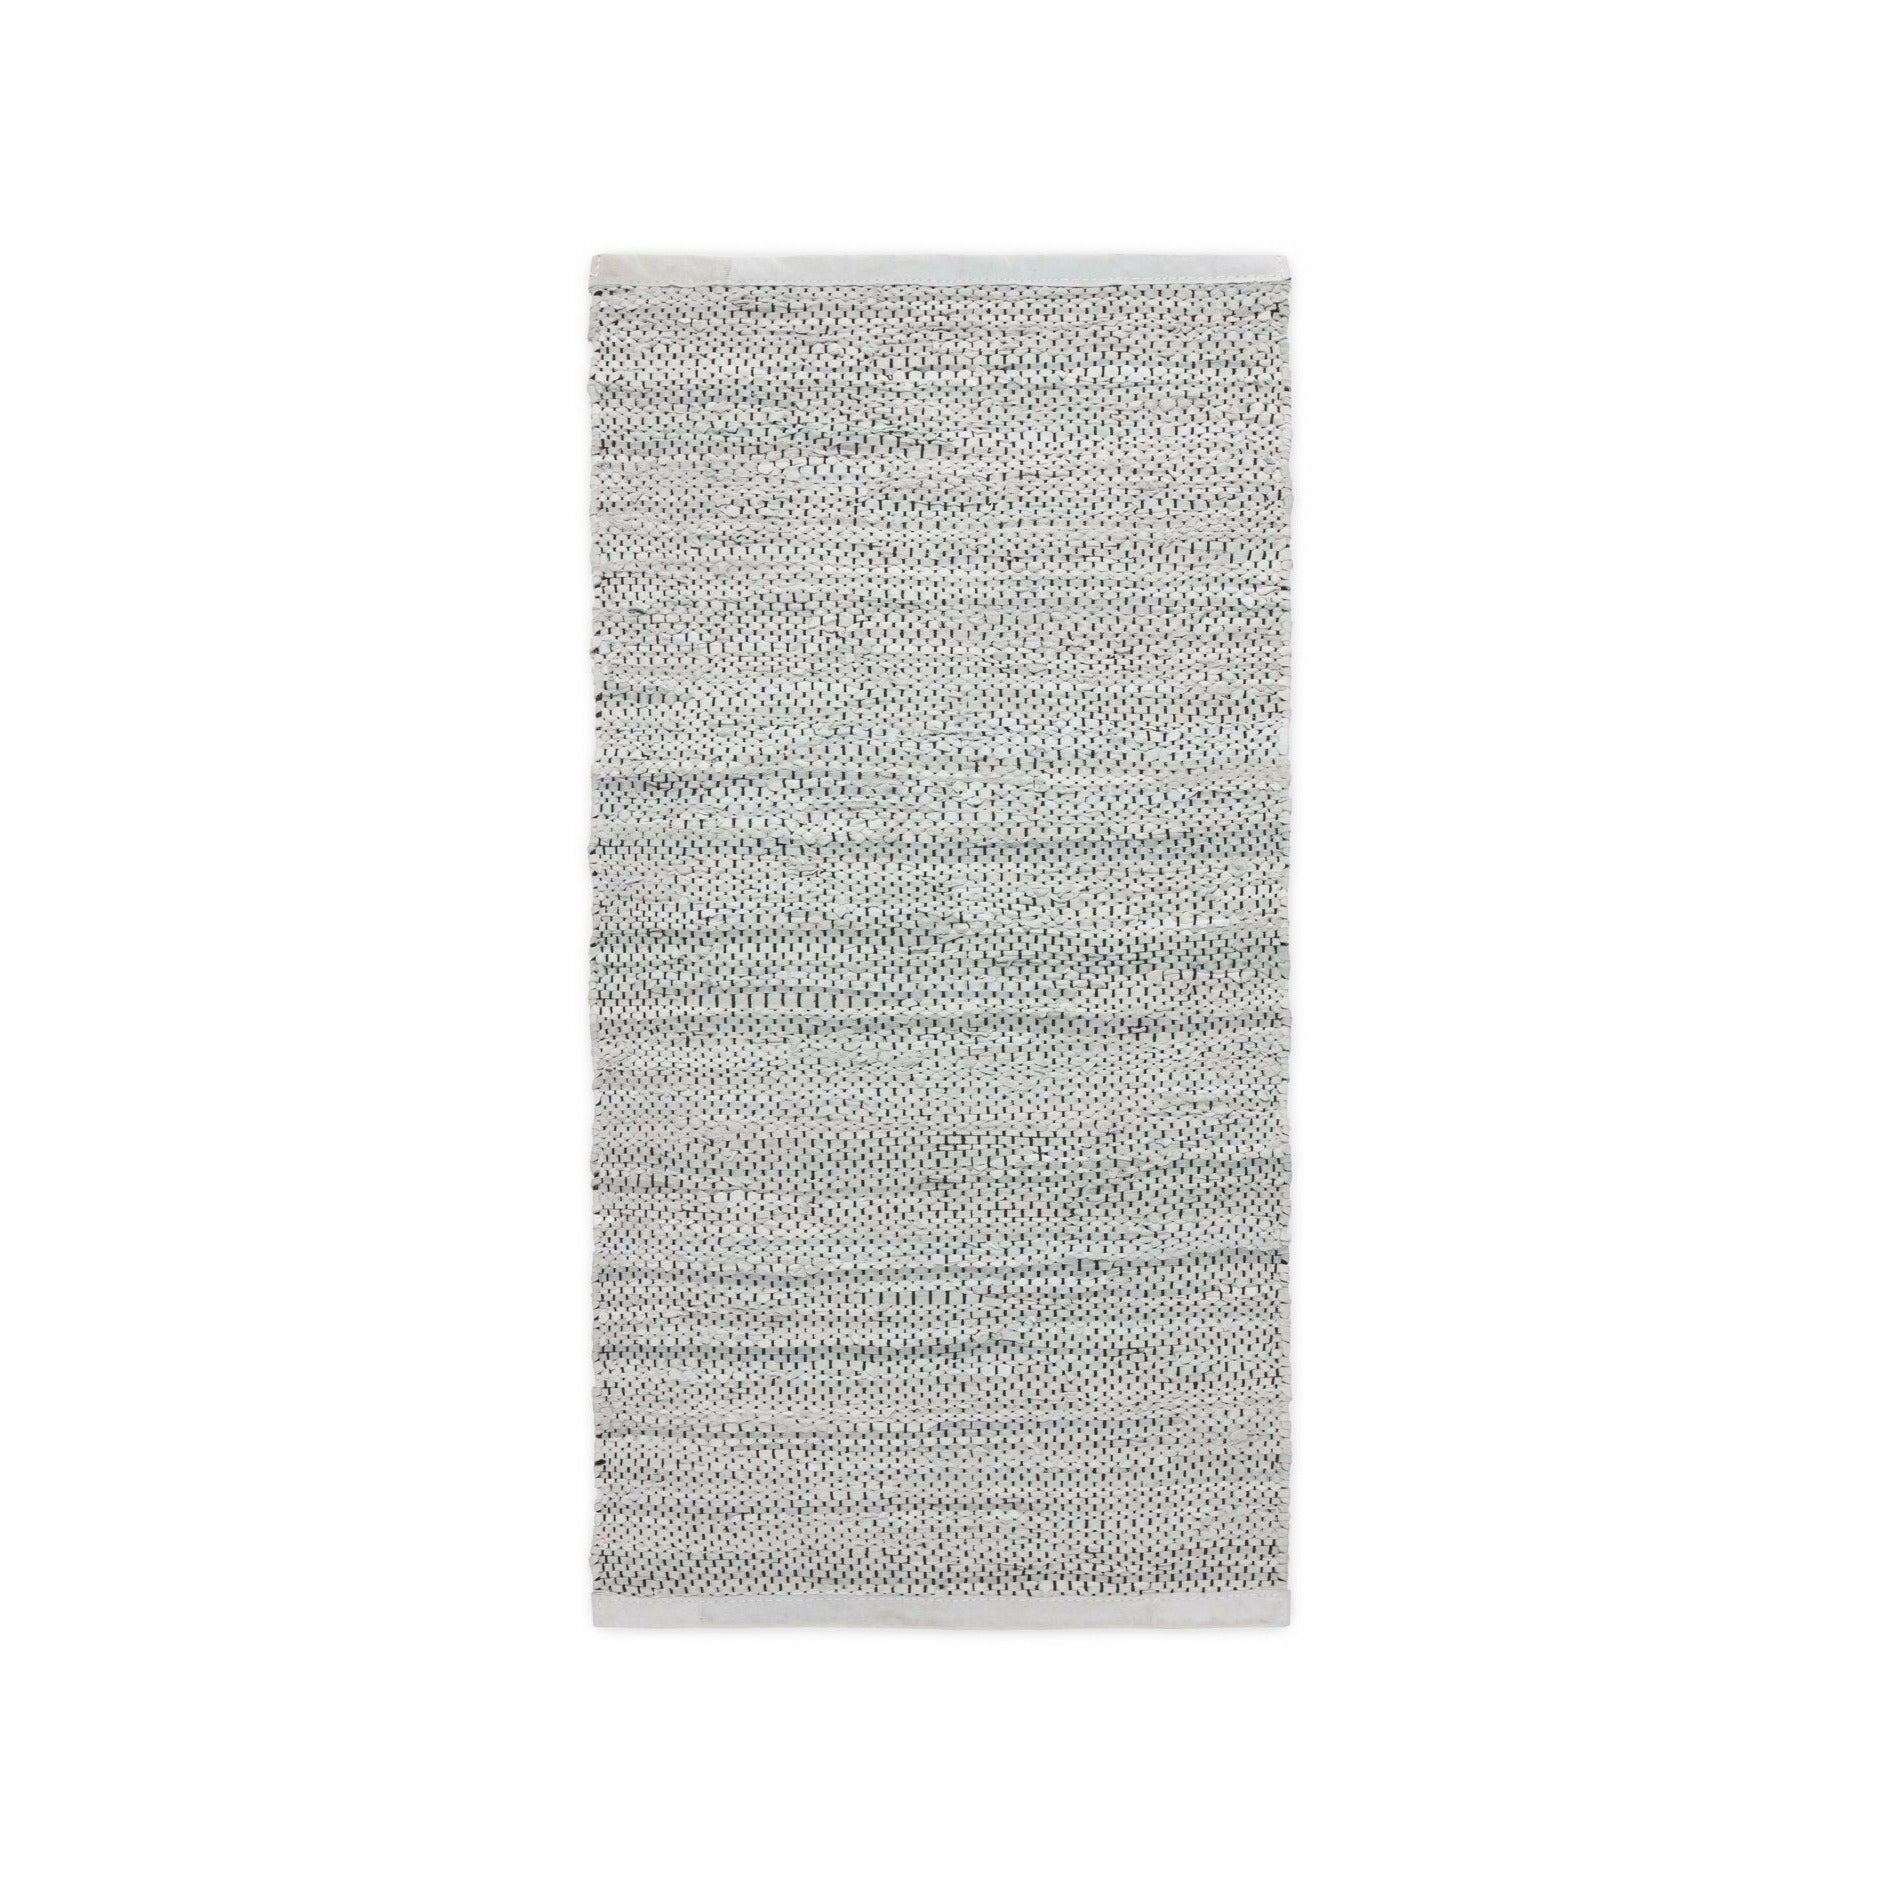 Tappeto in pelle solida grigio chiaro, 140 x 200 cm